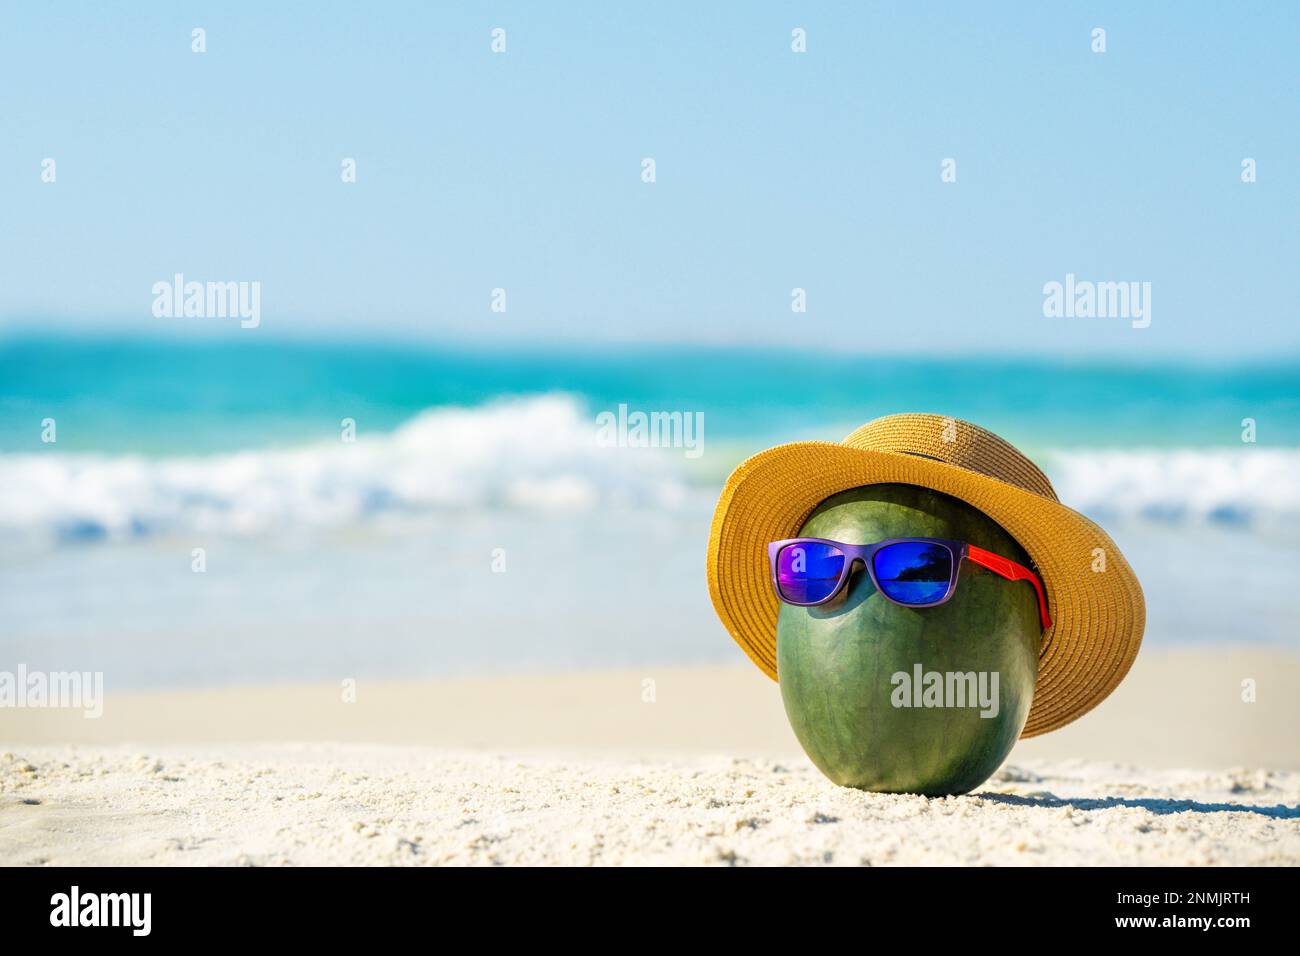 Lustige attraktive Wassermelone in stilvoller Sonnenbrille und Hut vor dem  Hintergrund des blauen Meeres und Himmels. Kreative Idee von Reisen, Speisen  und Getränken auf einem Tro Stockfotografie - Alamy